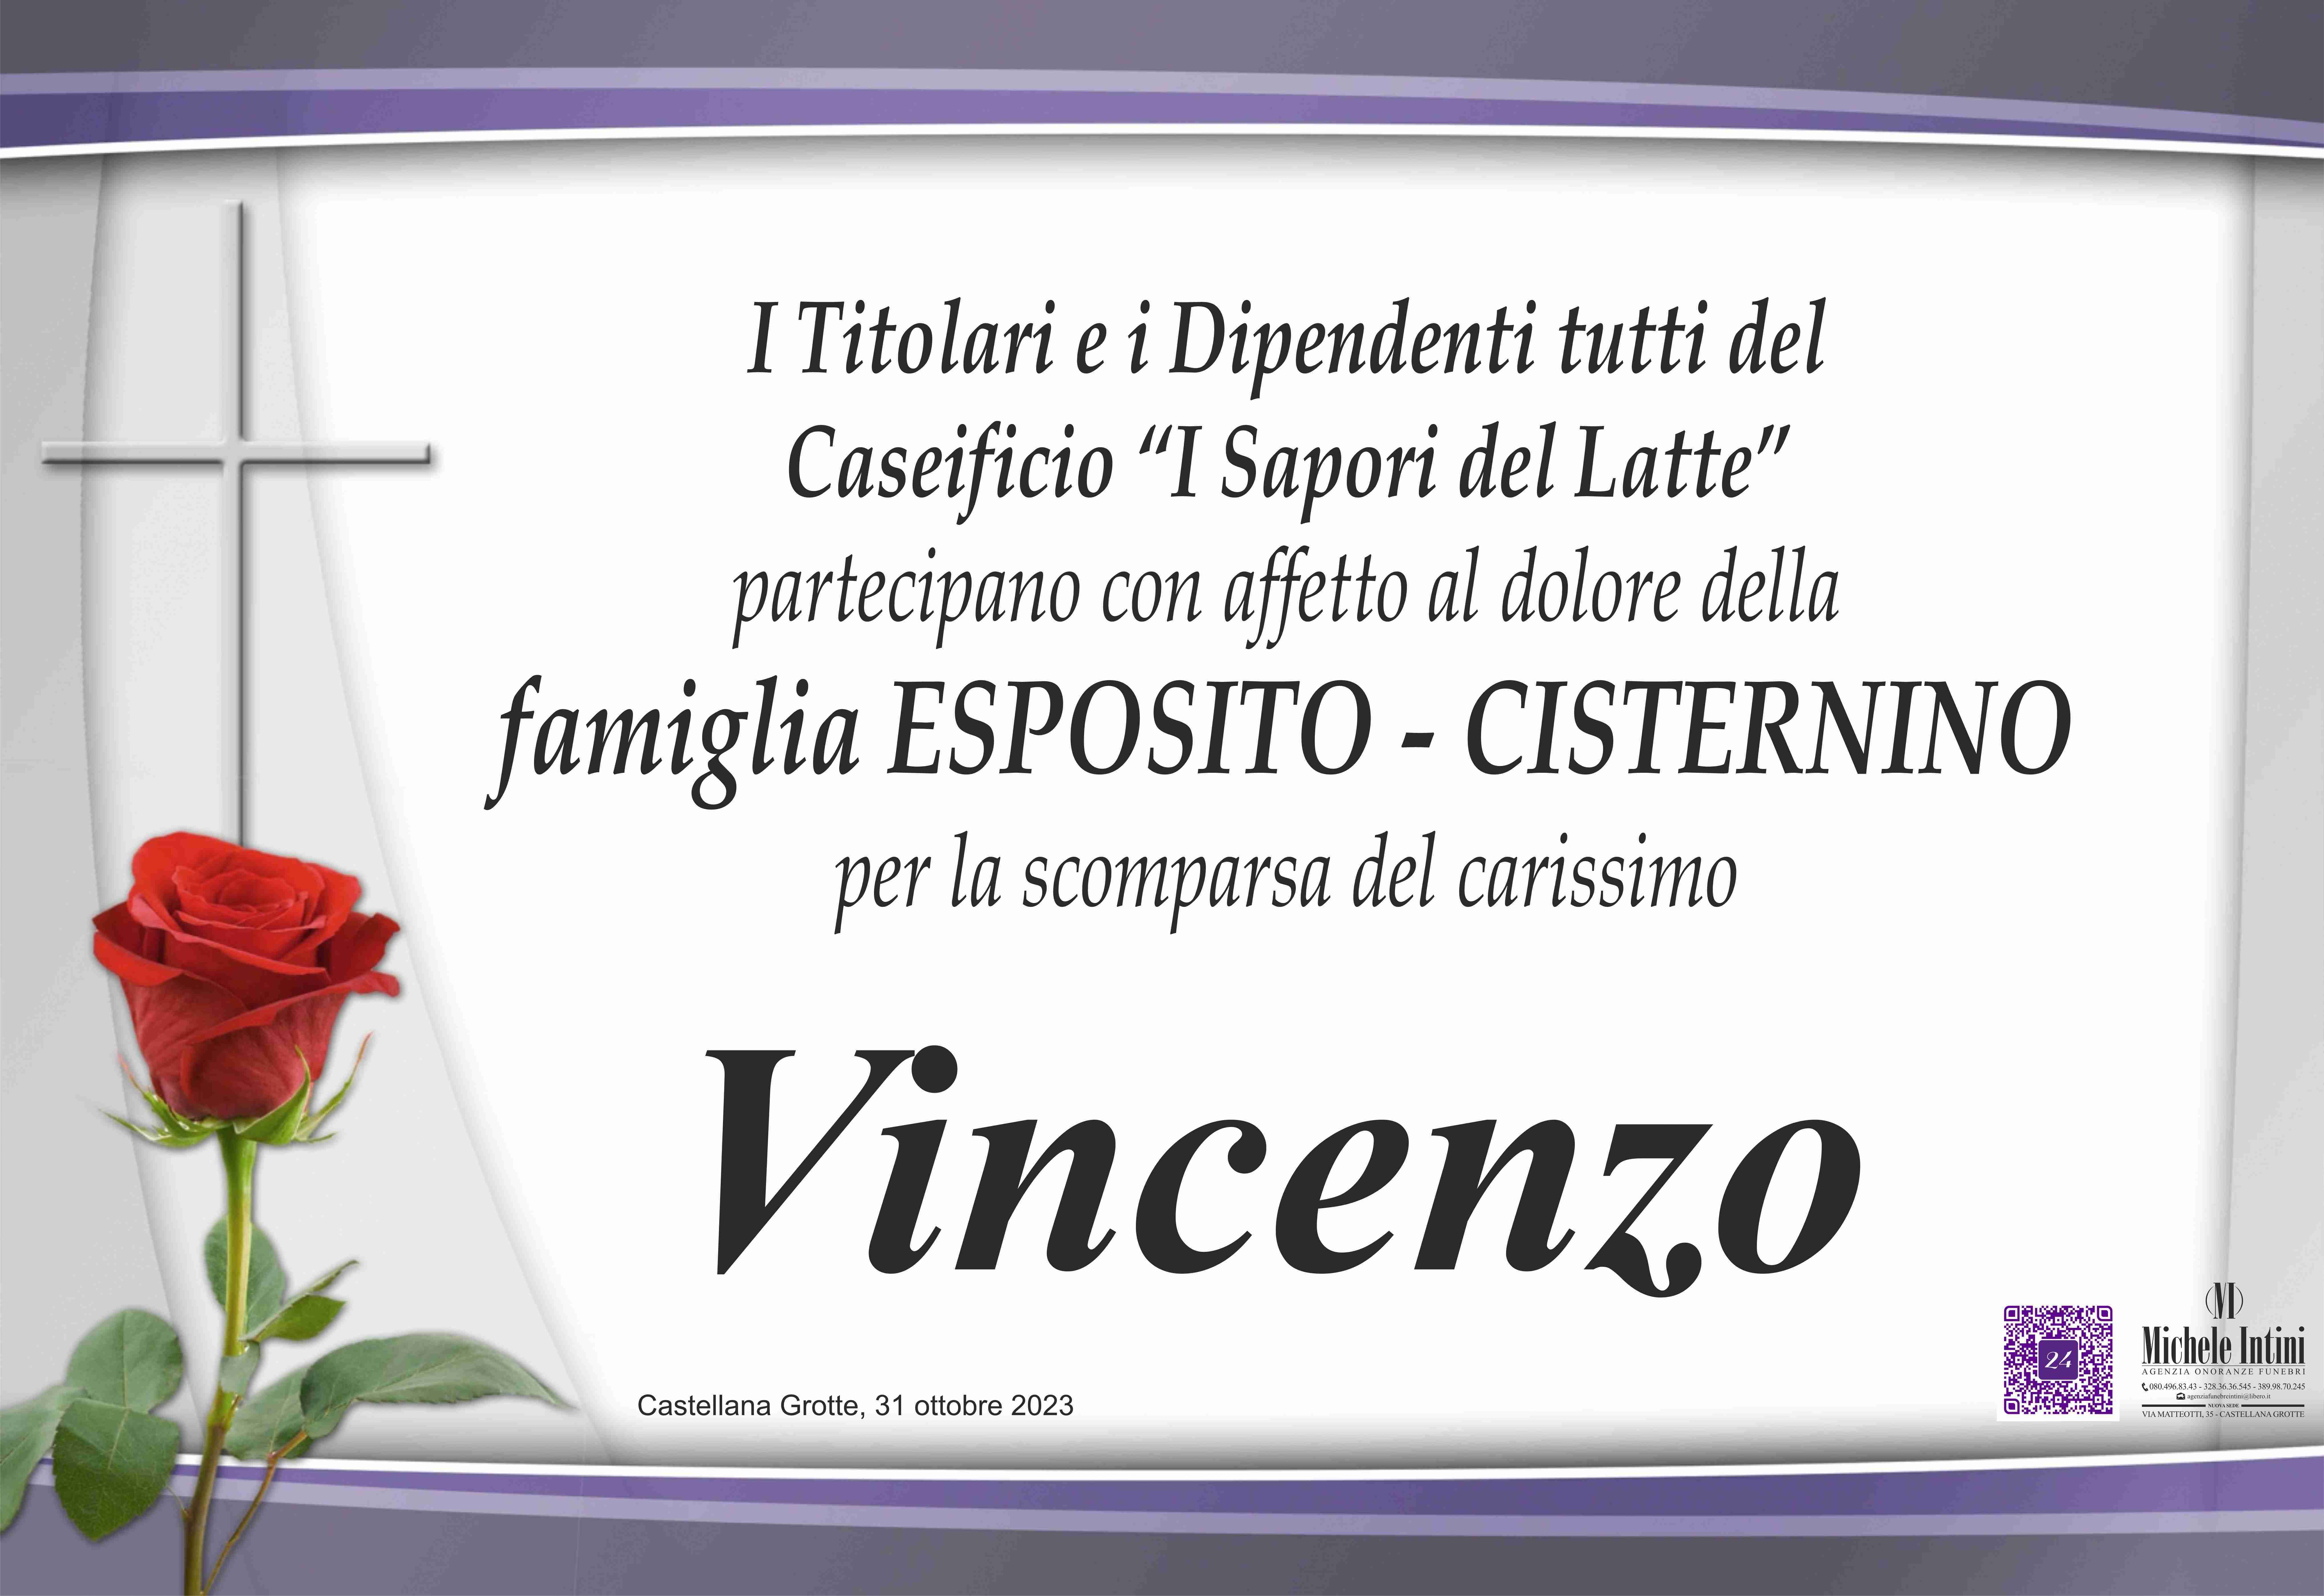 Vincenzo Esposito